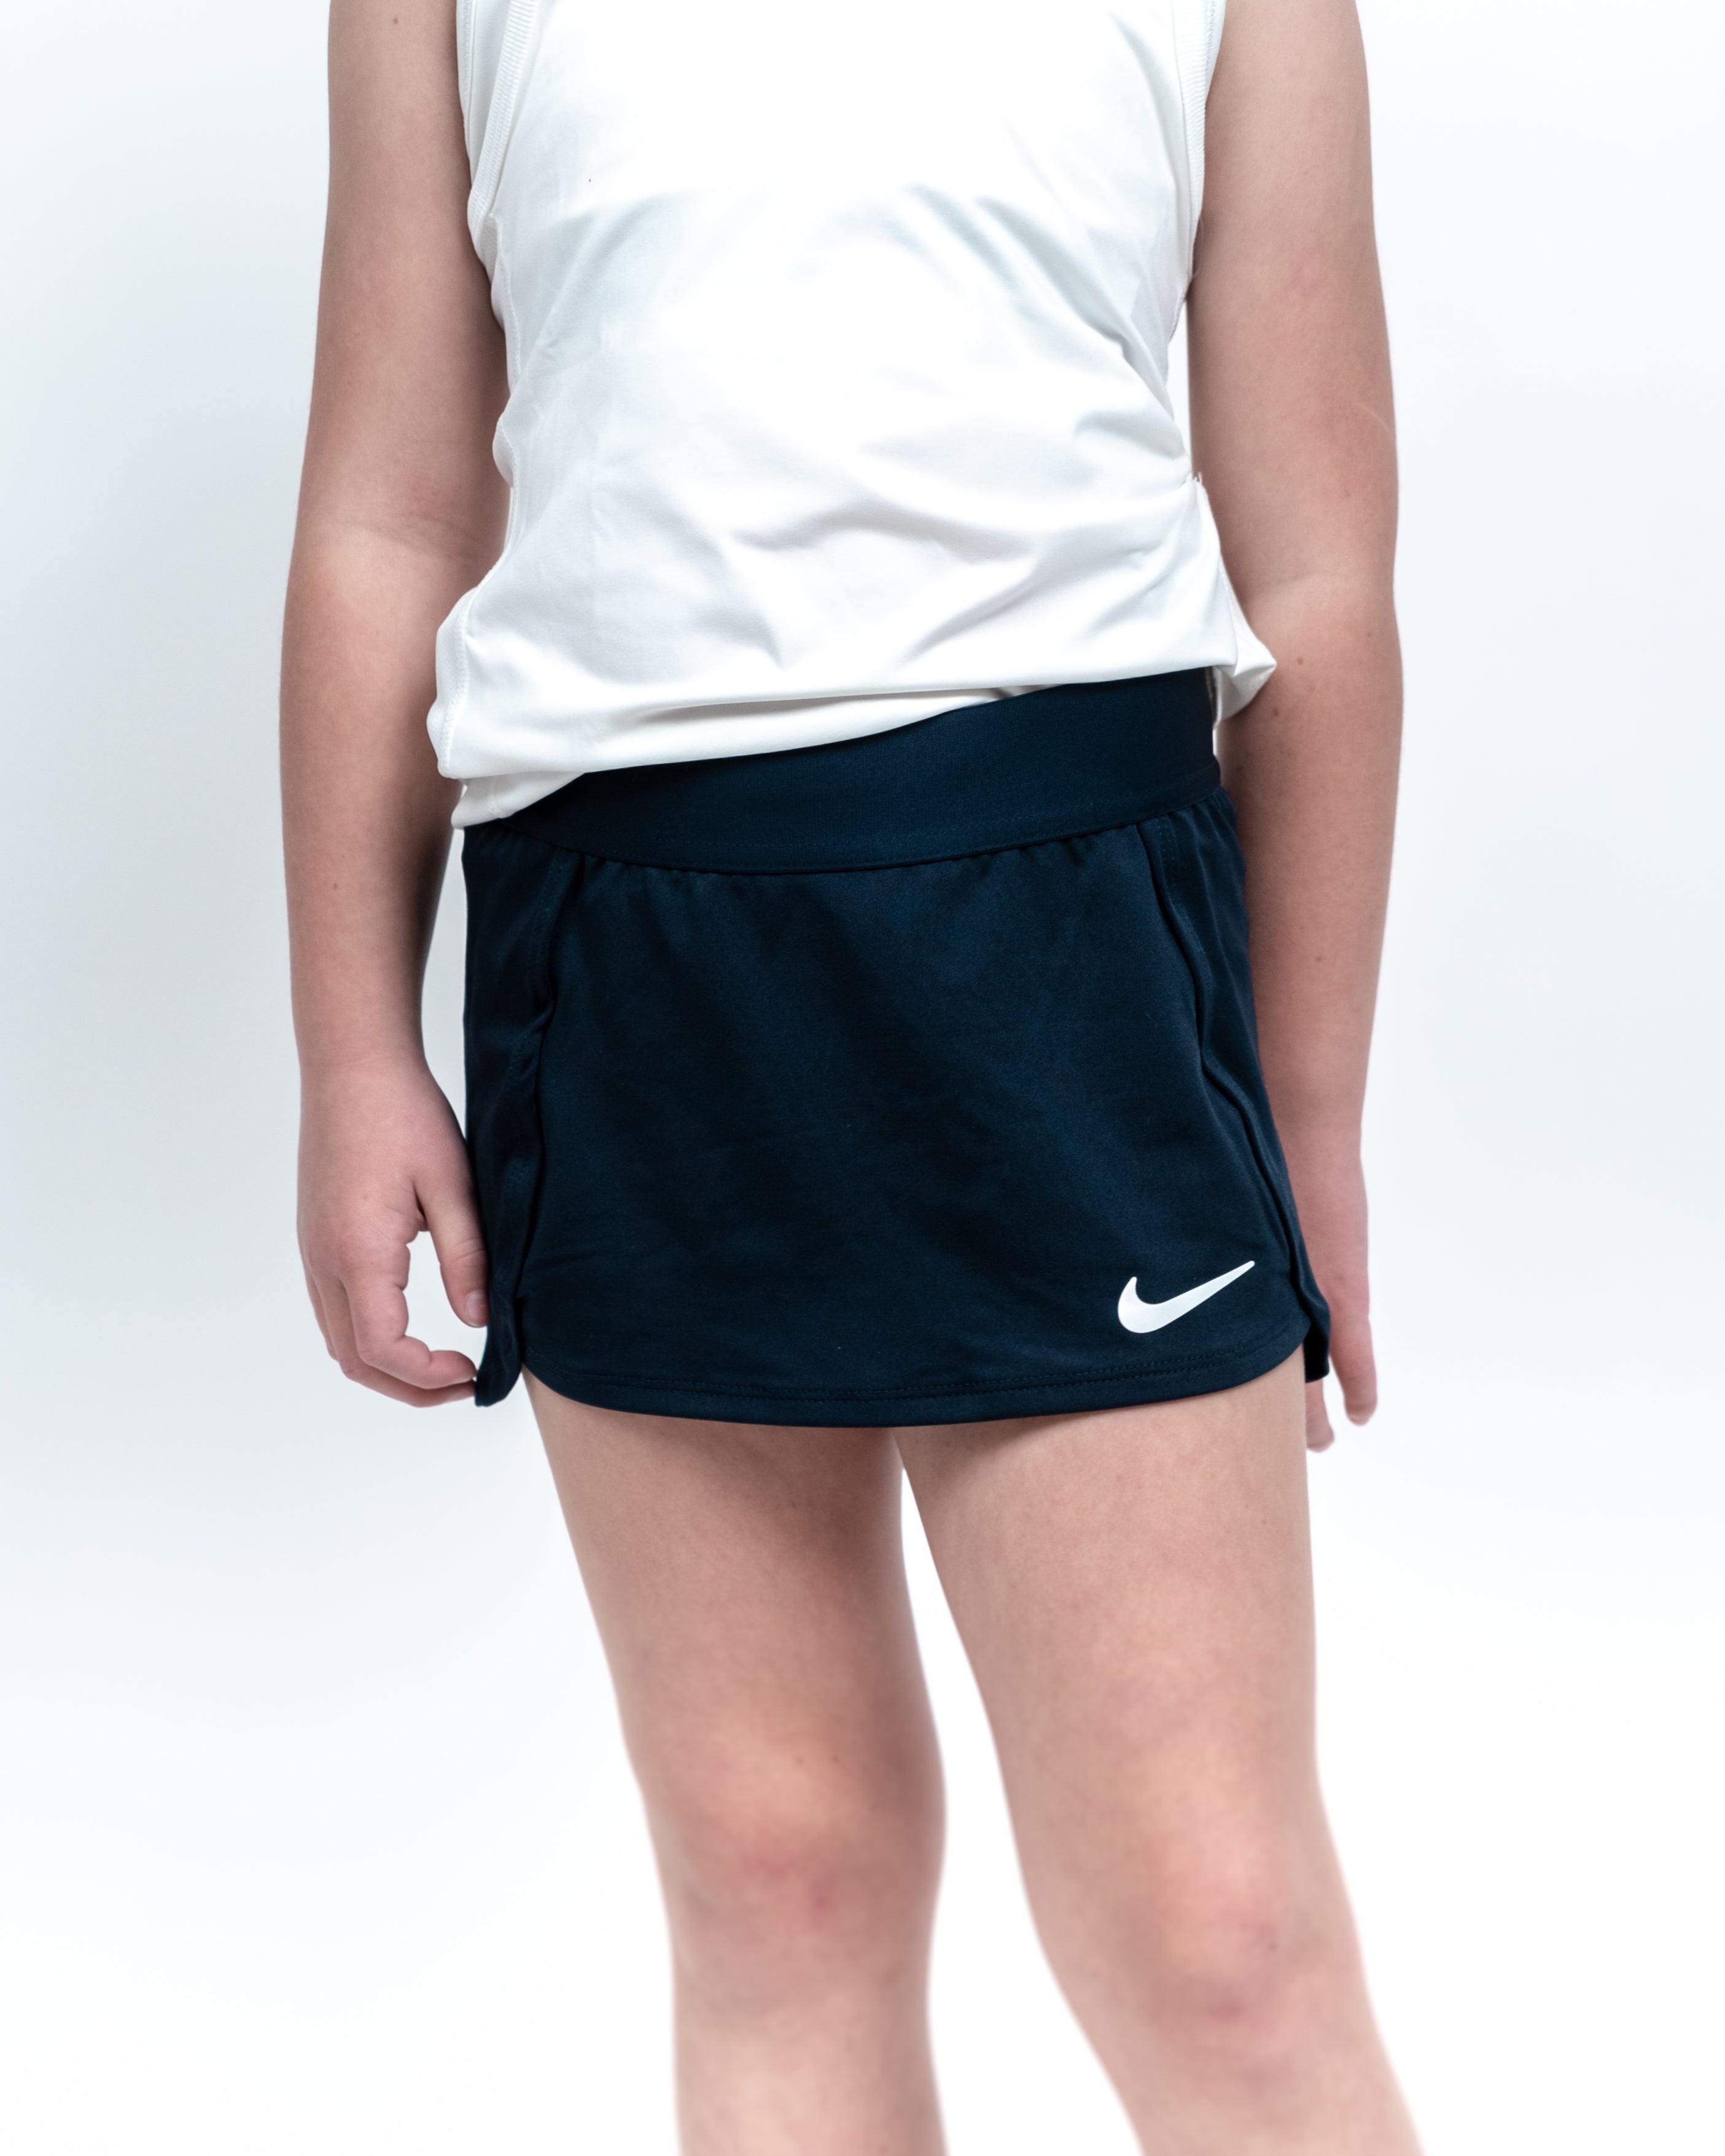 Nike Pige Skirt